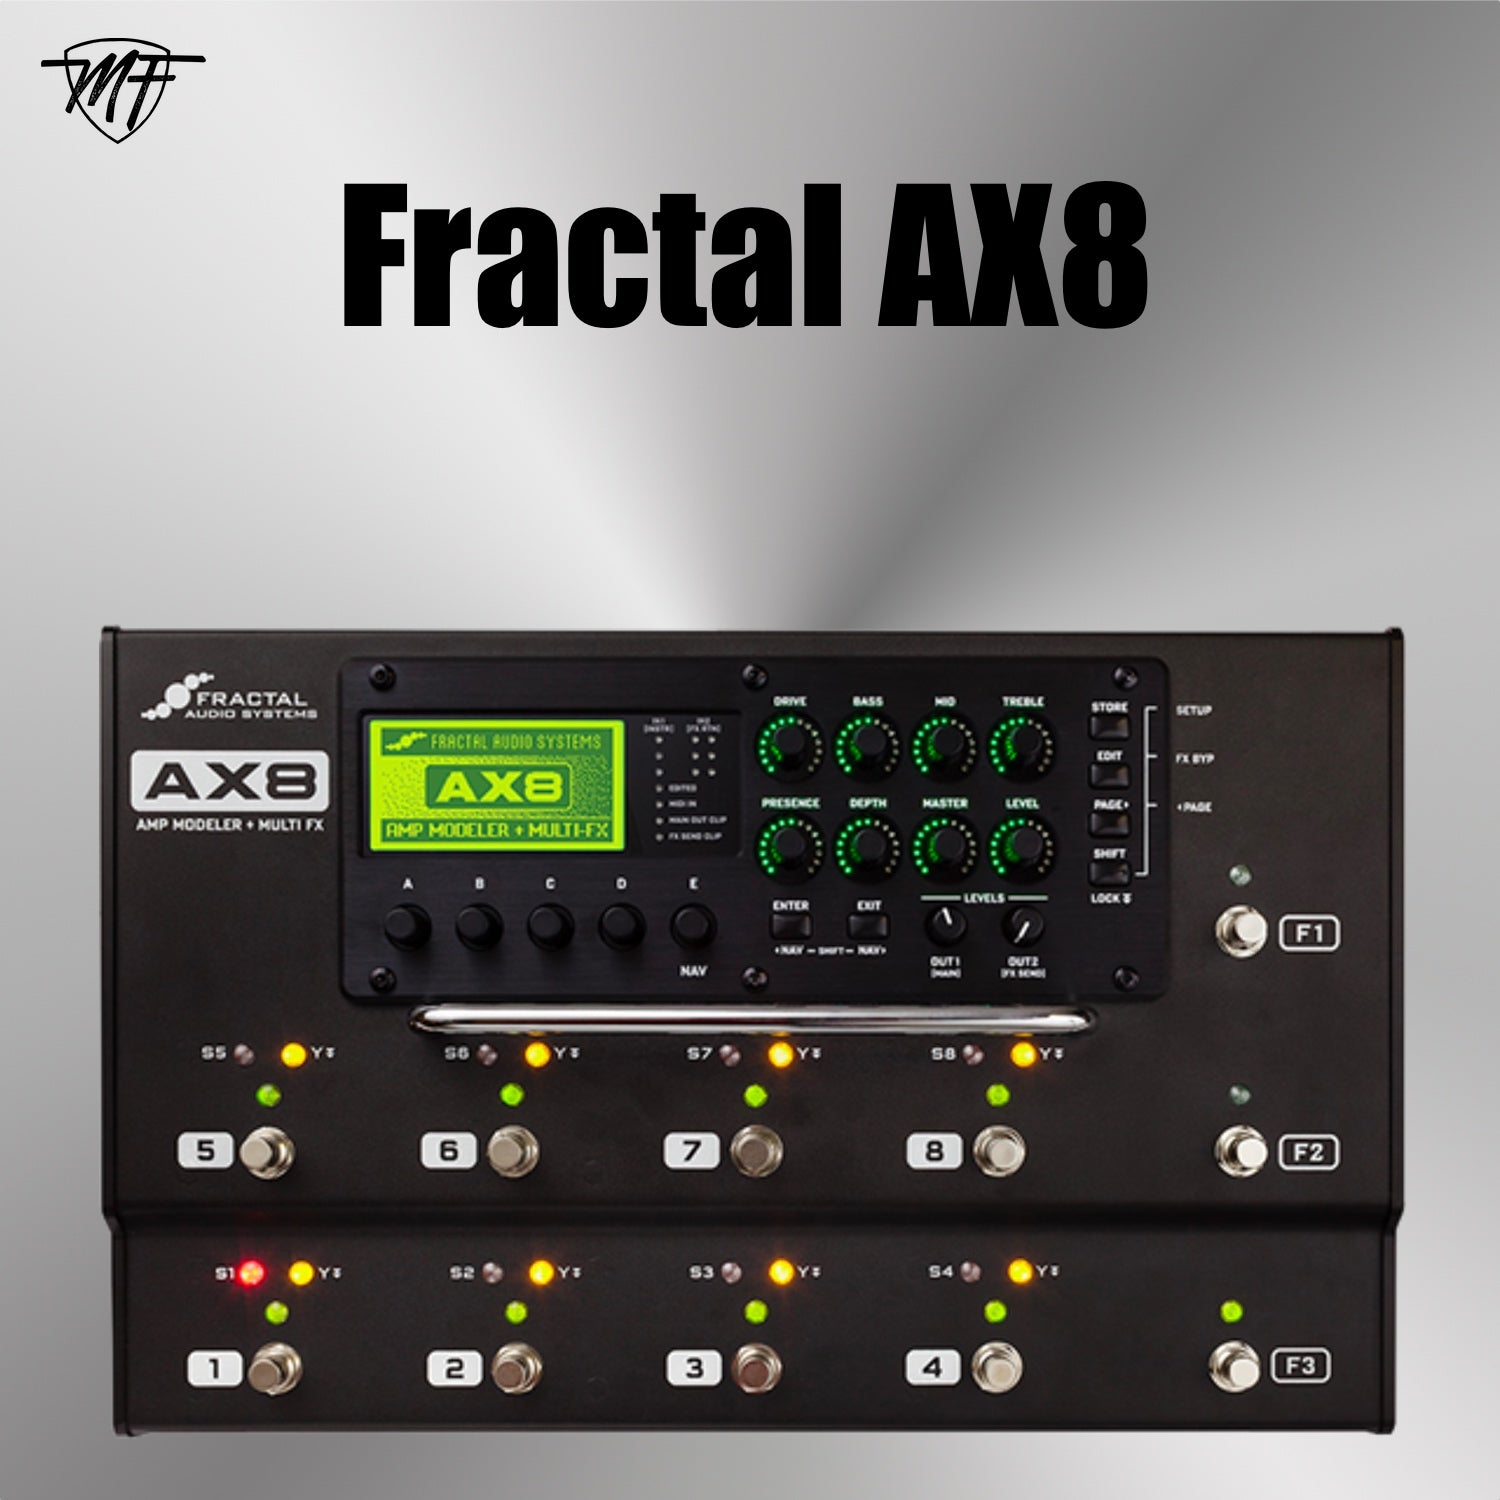 Fractal AX8 – FantHome srl